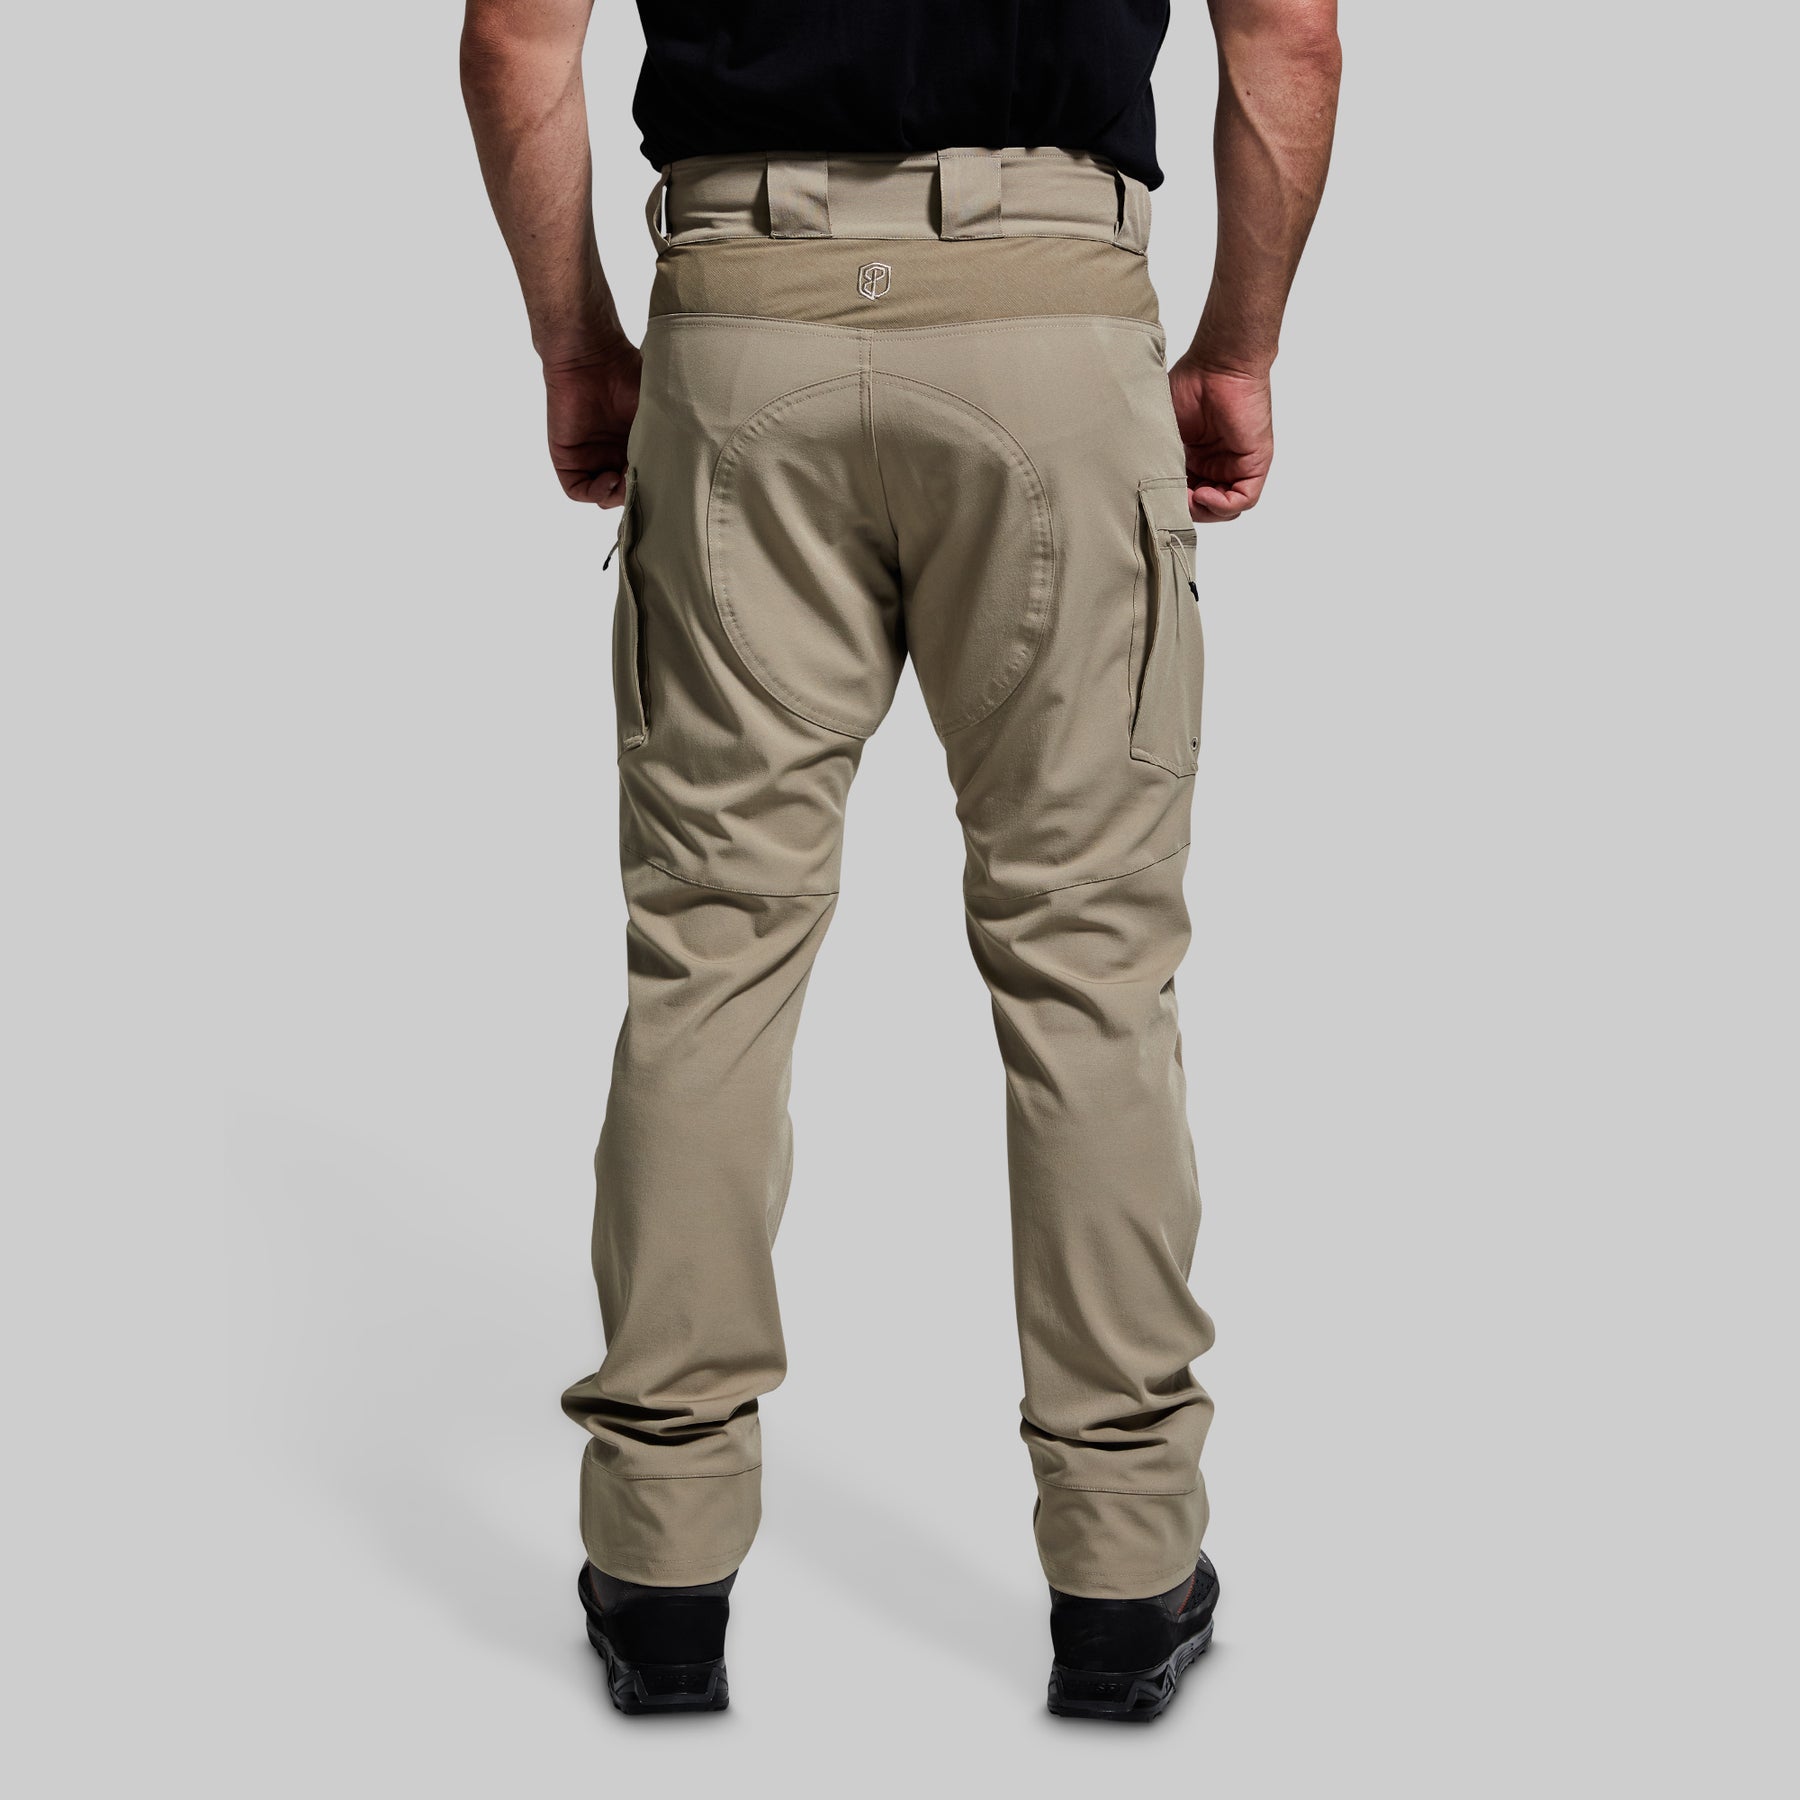 Men's Op Pants | Men's Tactical Pant | Military Pants – Born Primitive